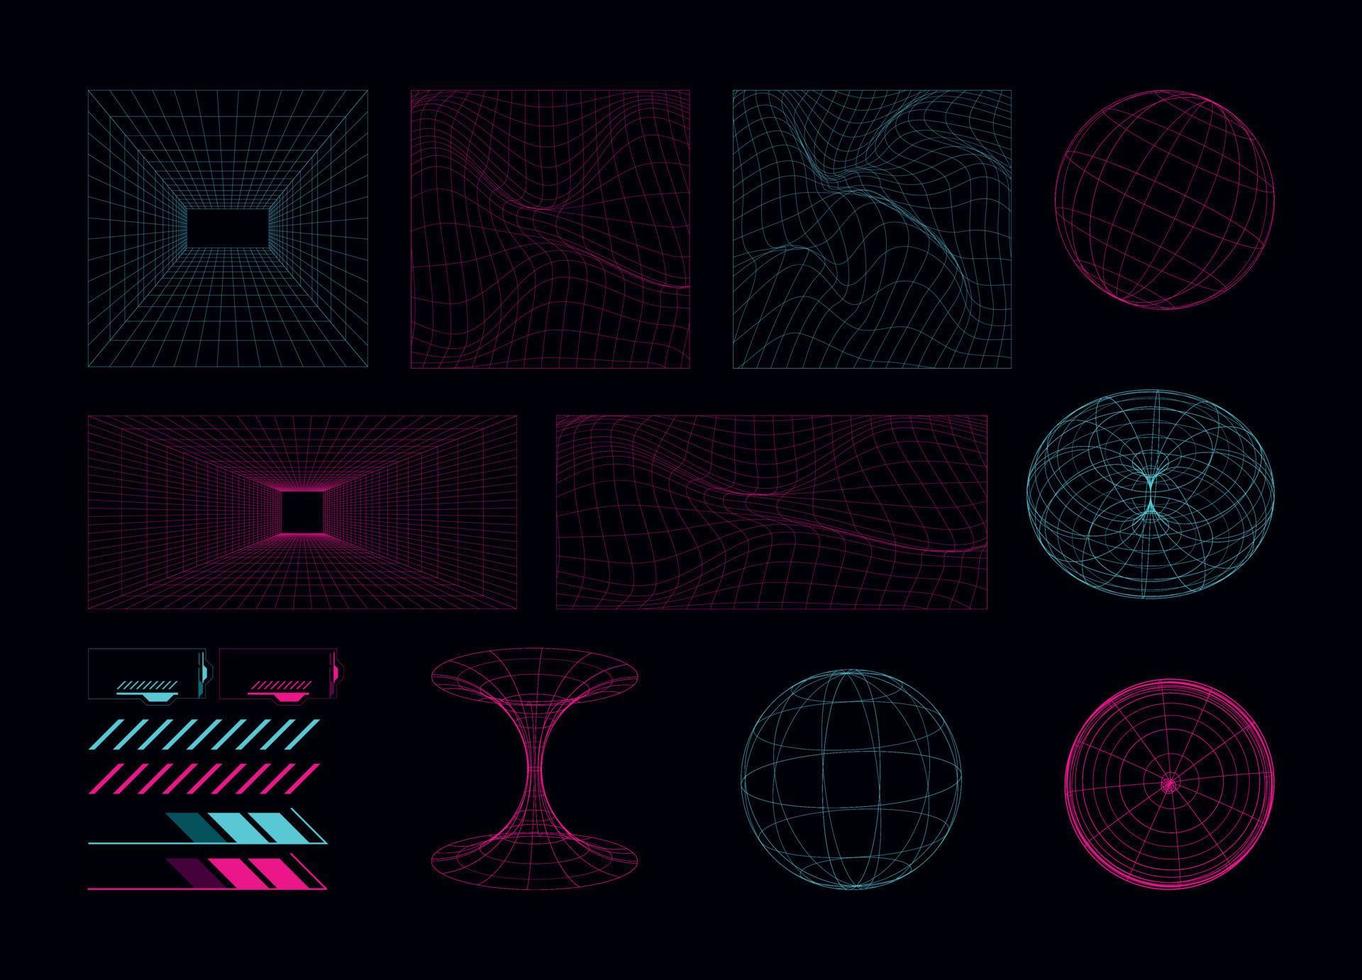 meetkundig retro wireframe 3d vormen, futuristische en cyberpunk rooster elementen met enthousiast stijl, abstract achtergrond met gloeiend neon lichten vector